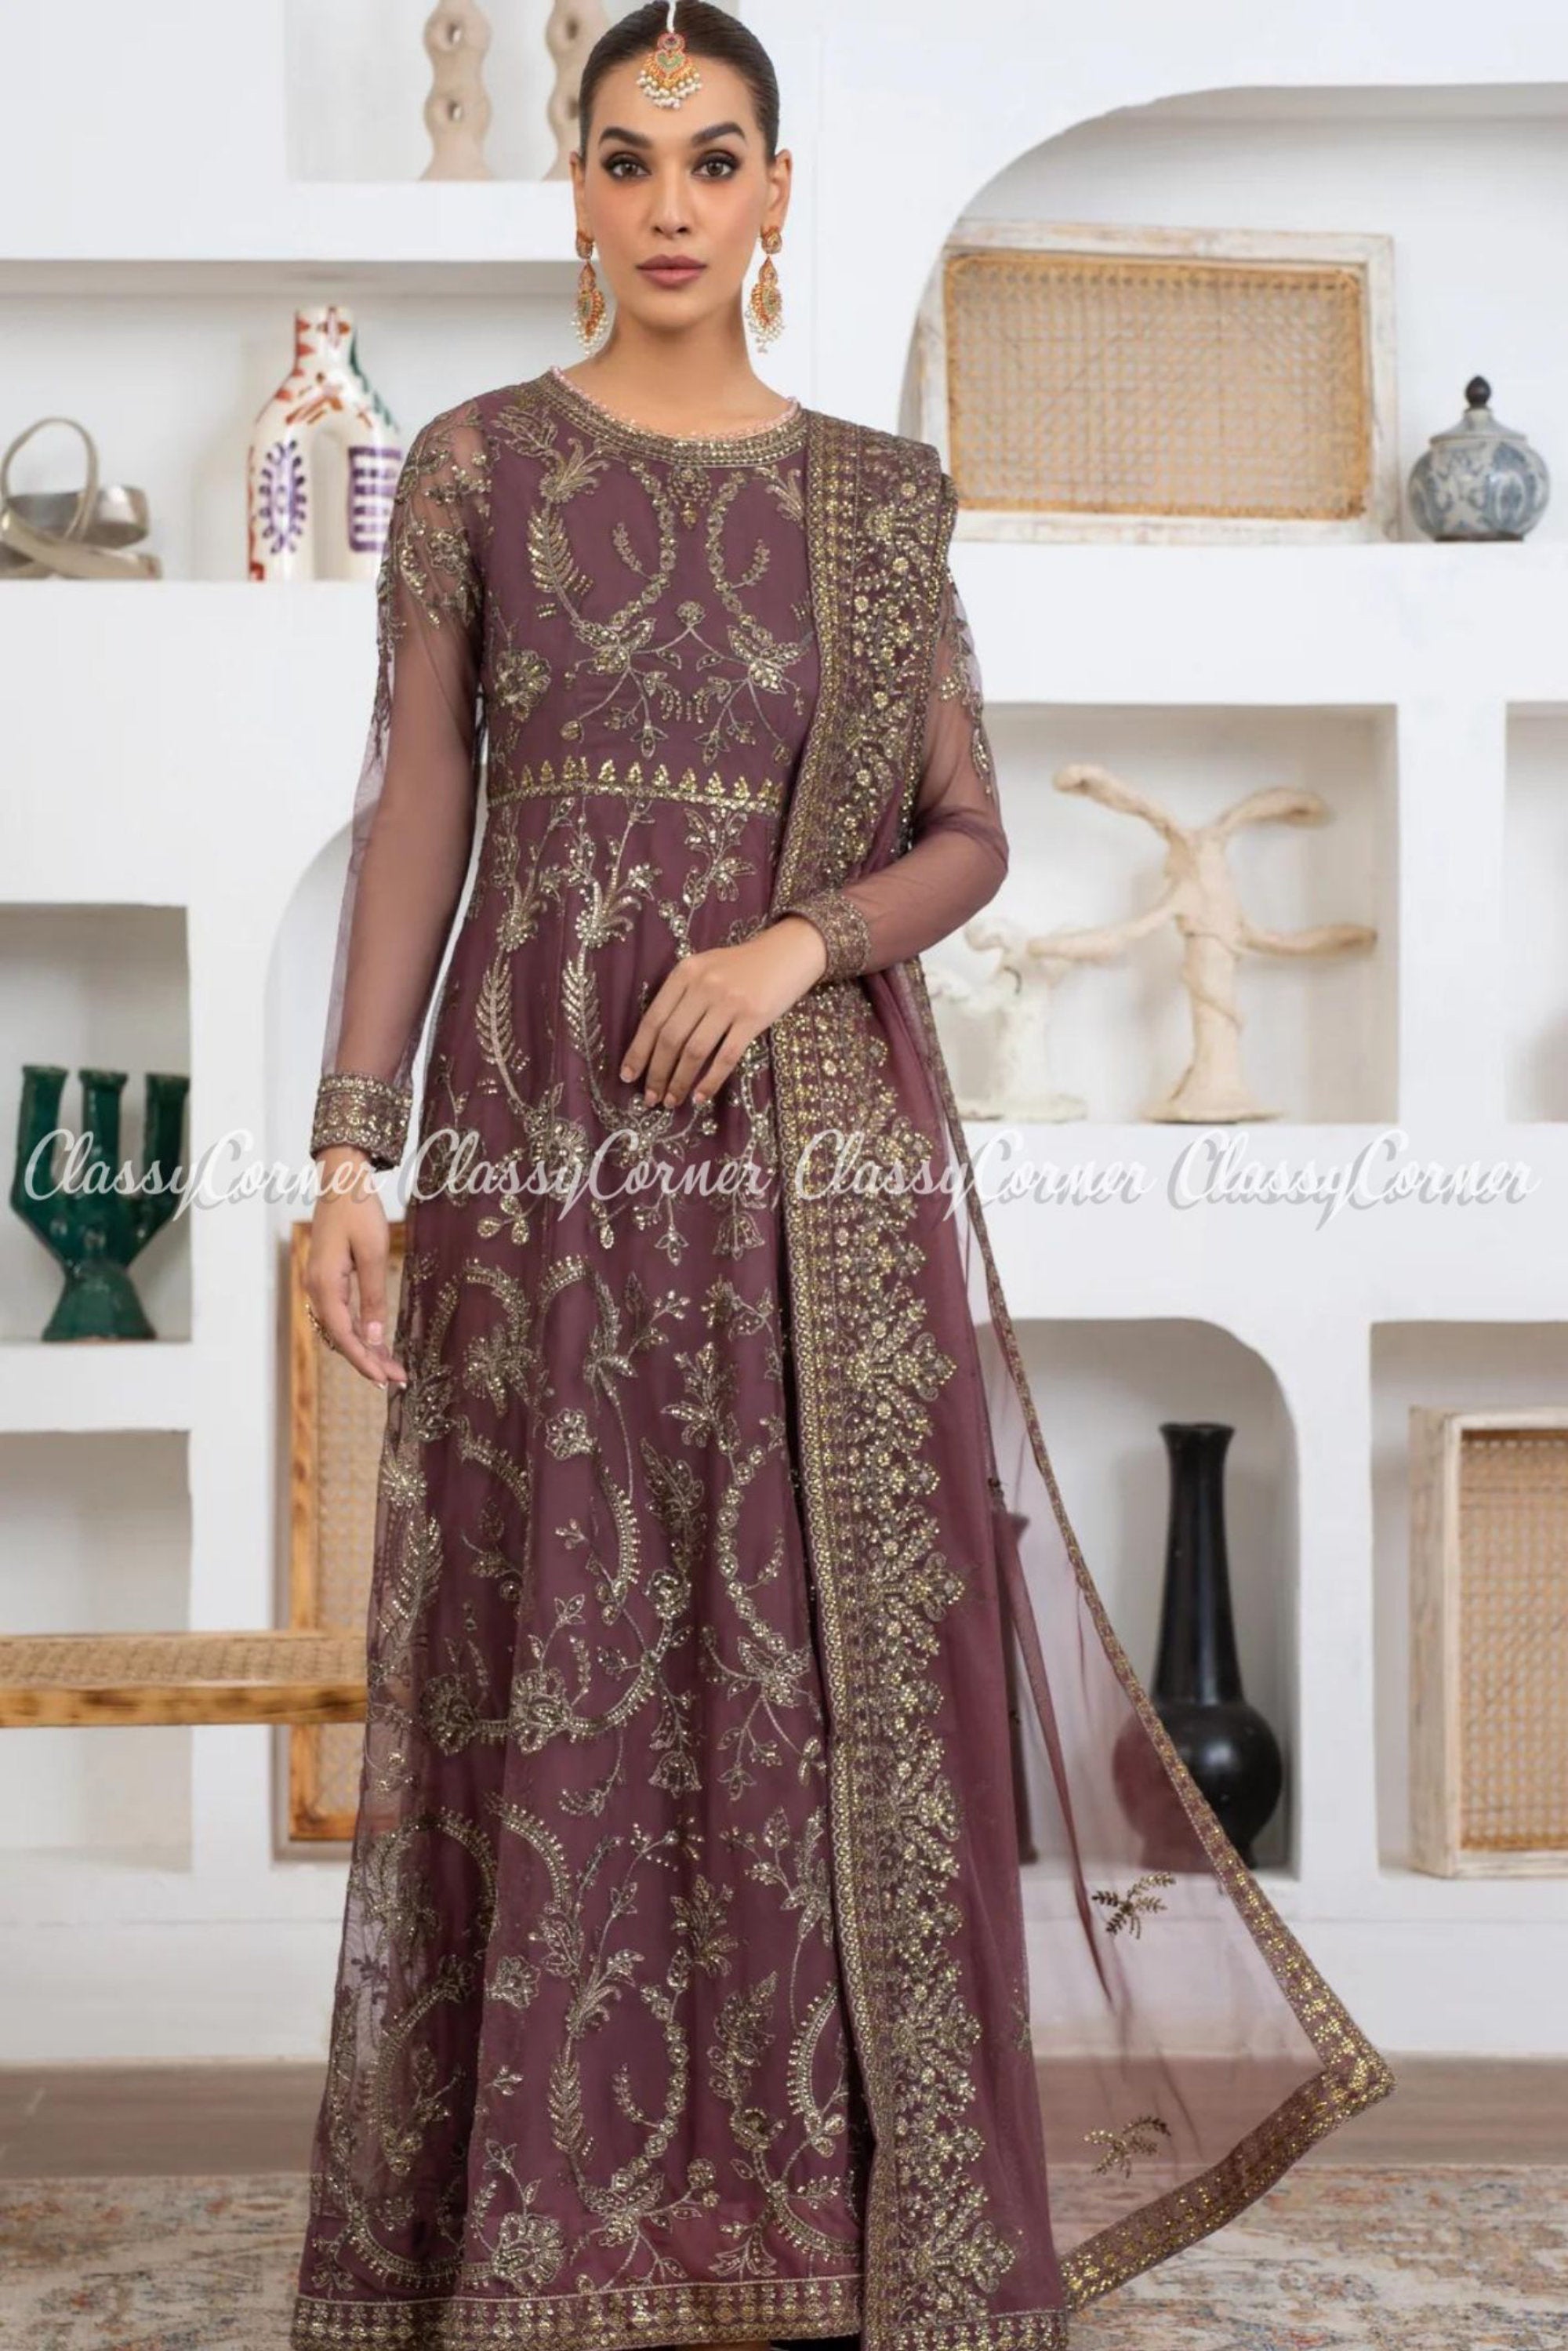 Buy Red Priyanka Chopra Saree Gown Party Wear Online at Best Price | Cbazaar